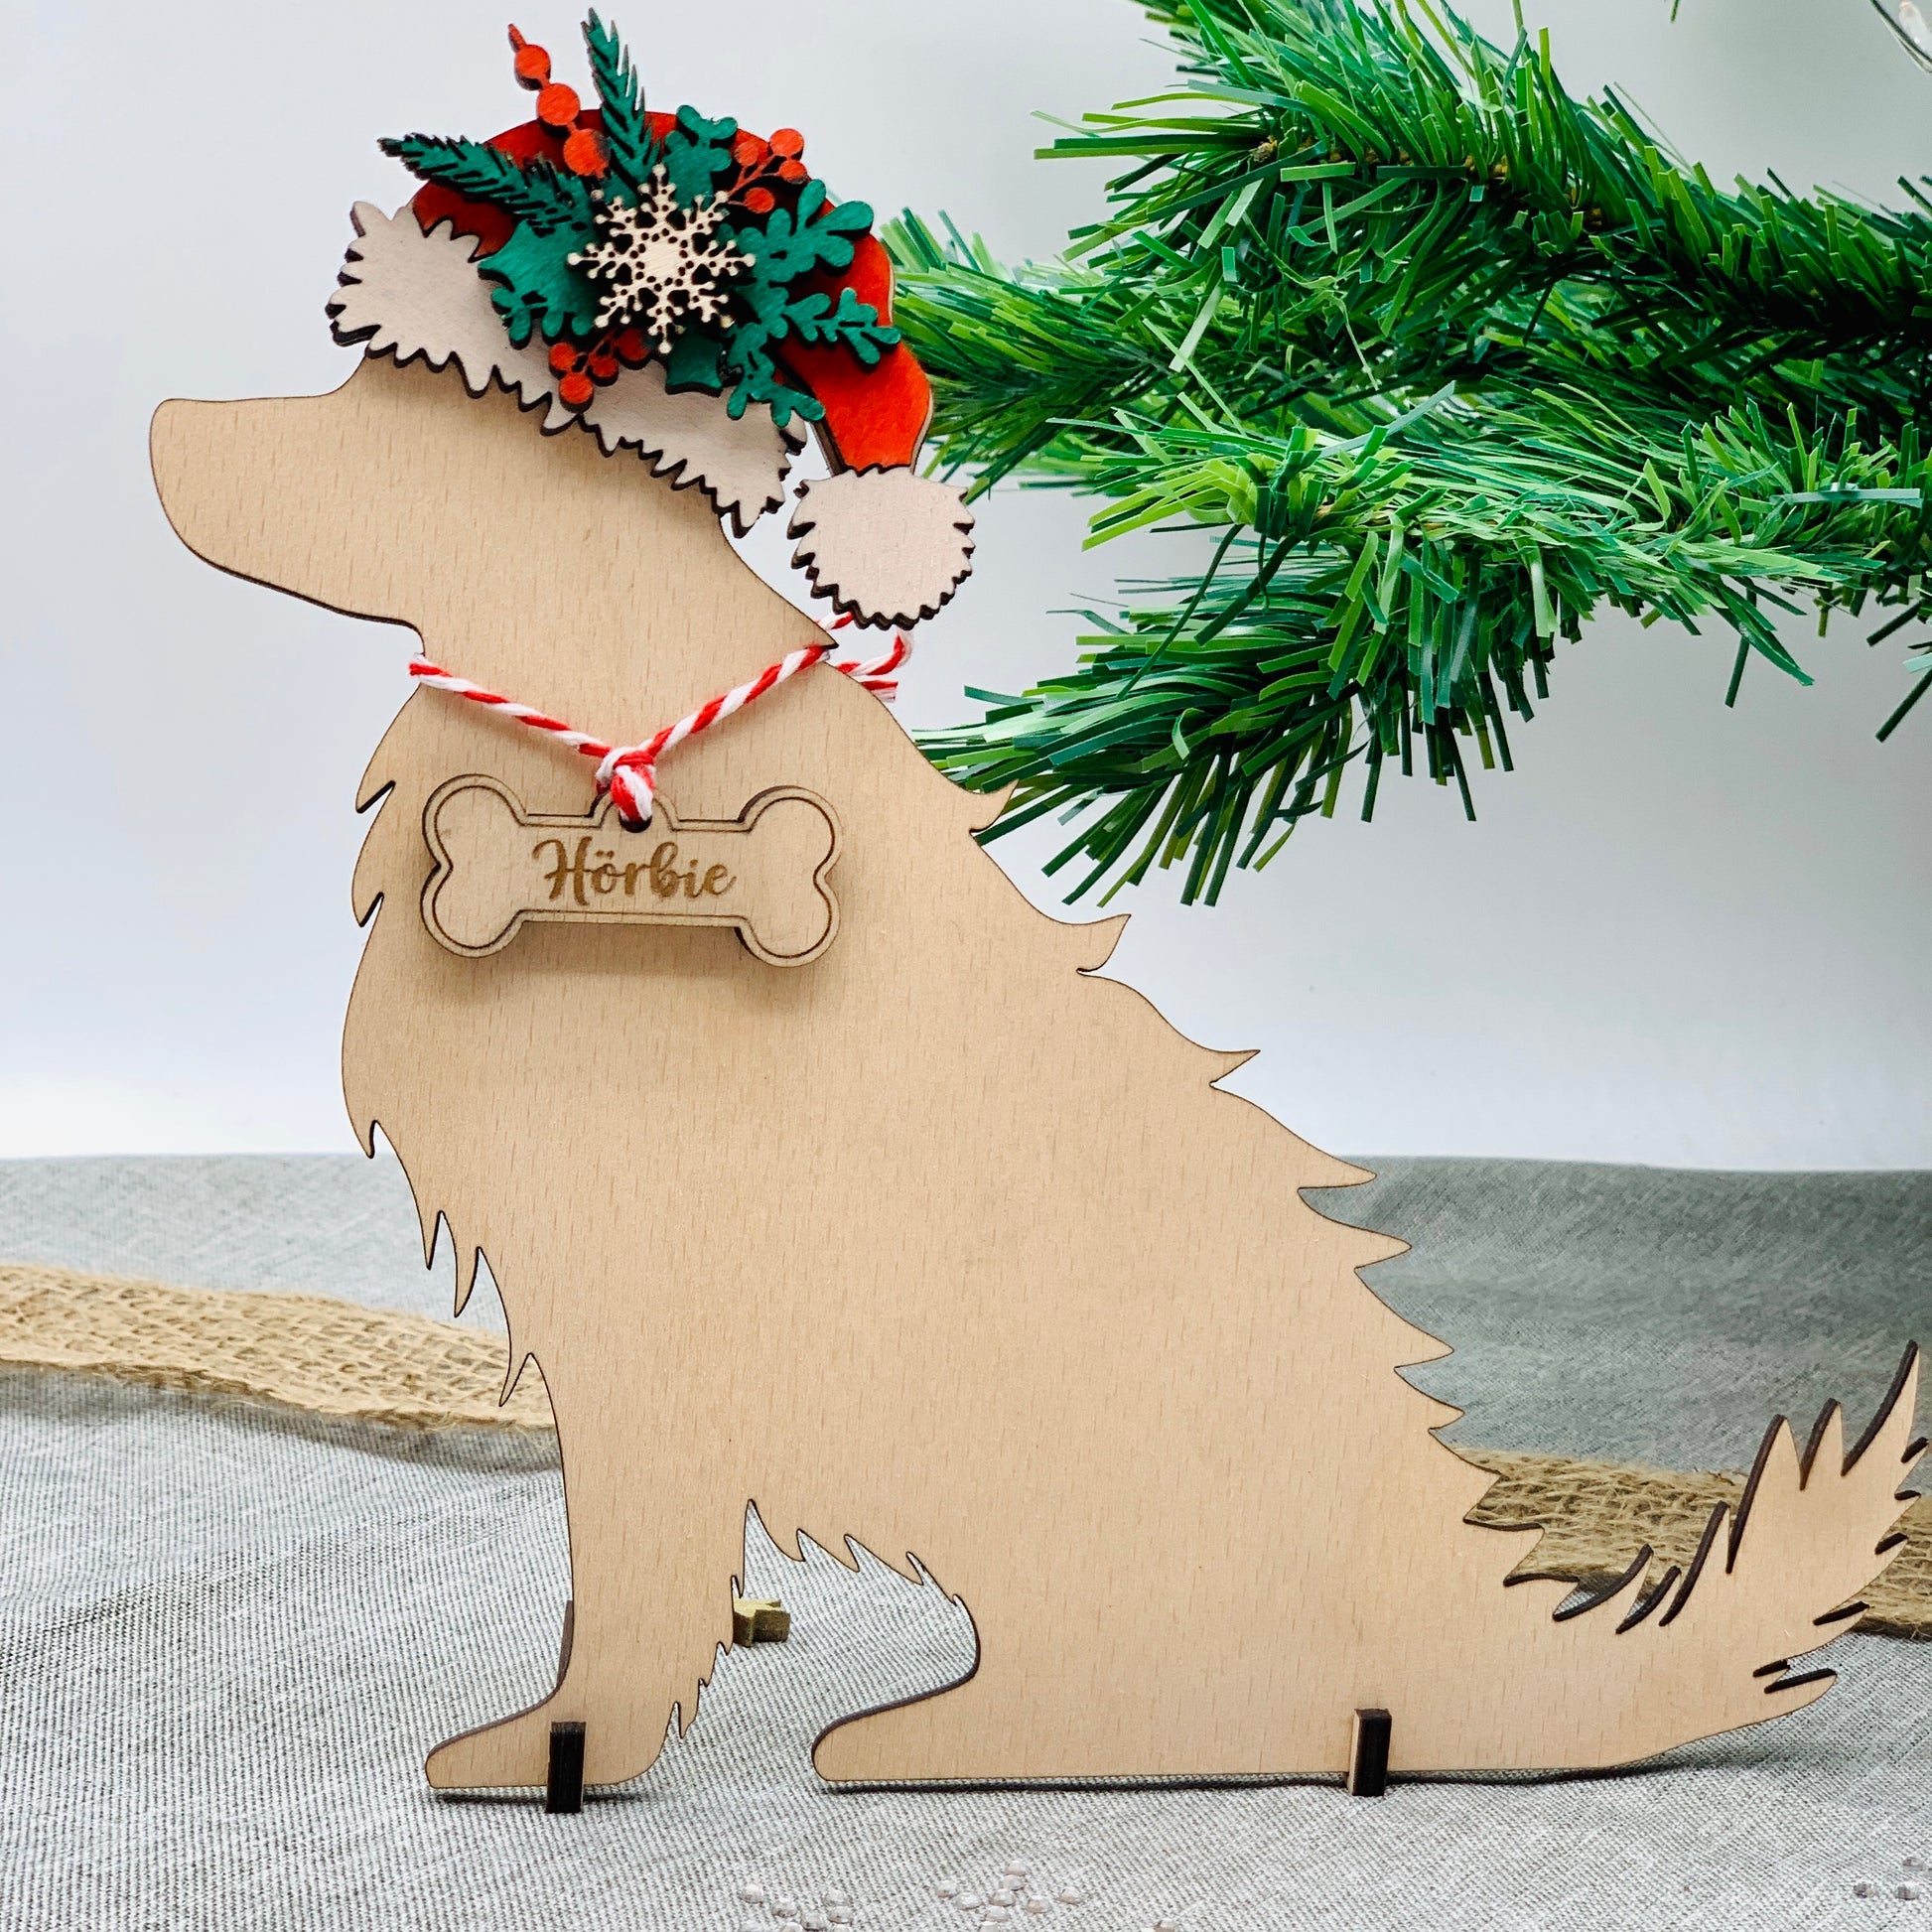 Weihnachtsdeko Nikolaushund mit Namen aus Holz - nachhaltige Weihnachtsdeko für Hundebesitzer - Hund Silhouette personalisiert